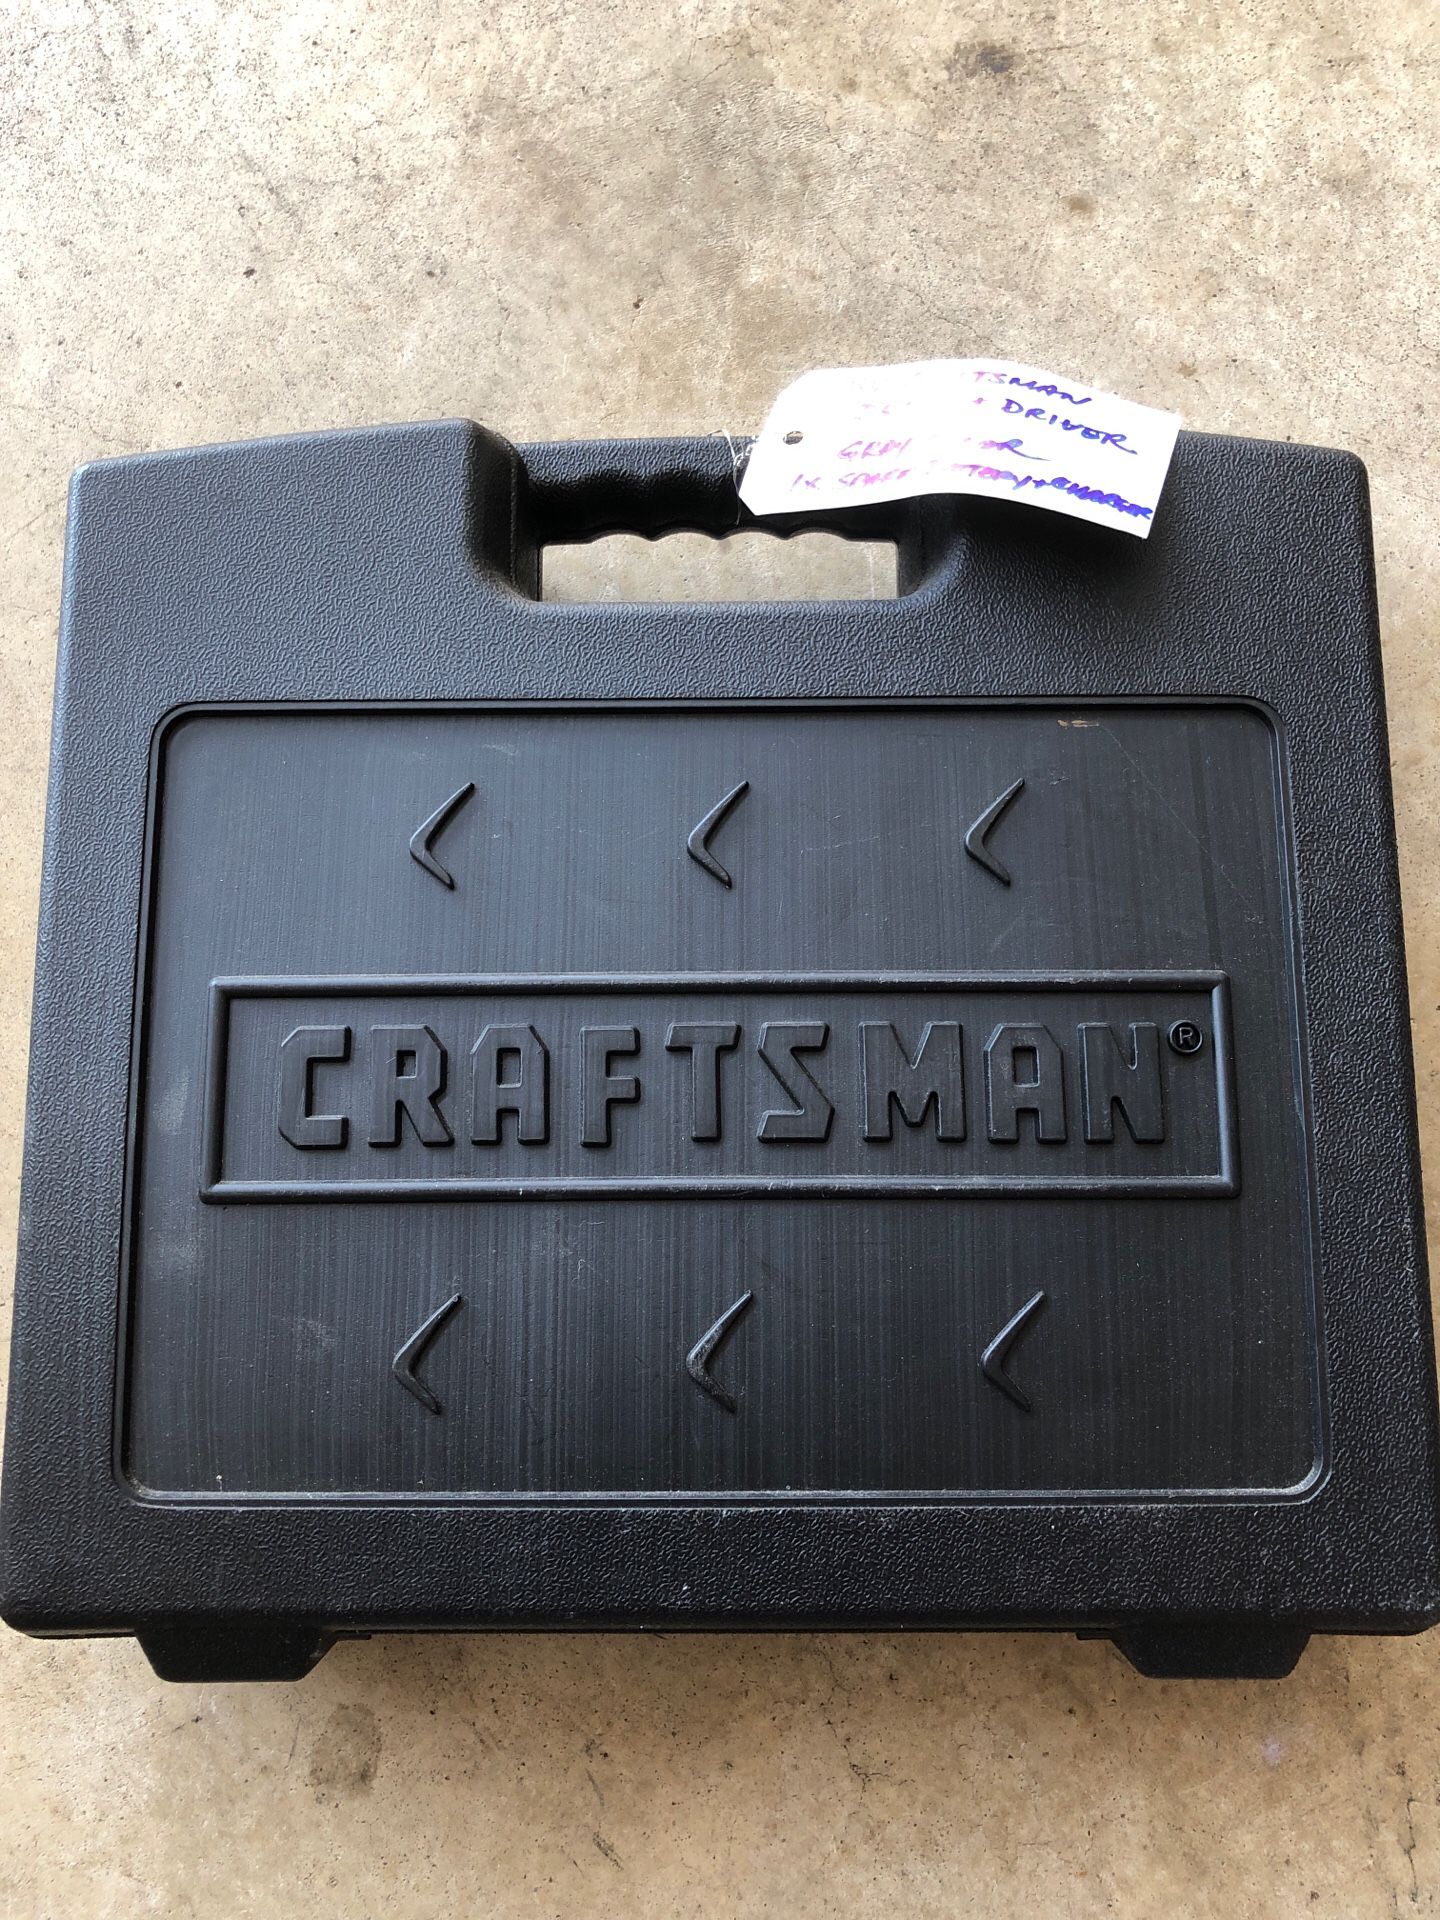 Craftsman 18 Volt Drill/Driver